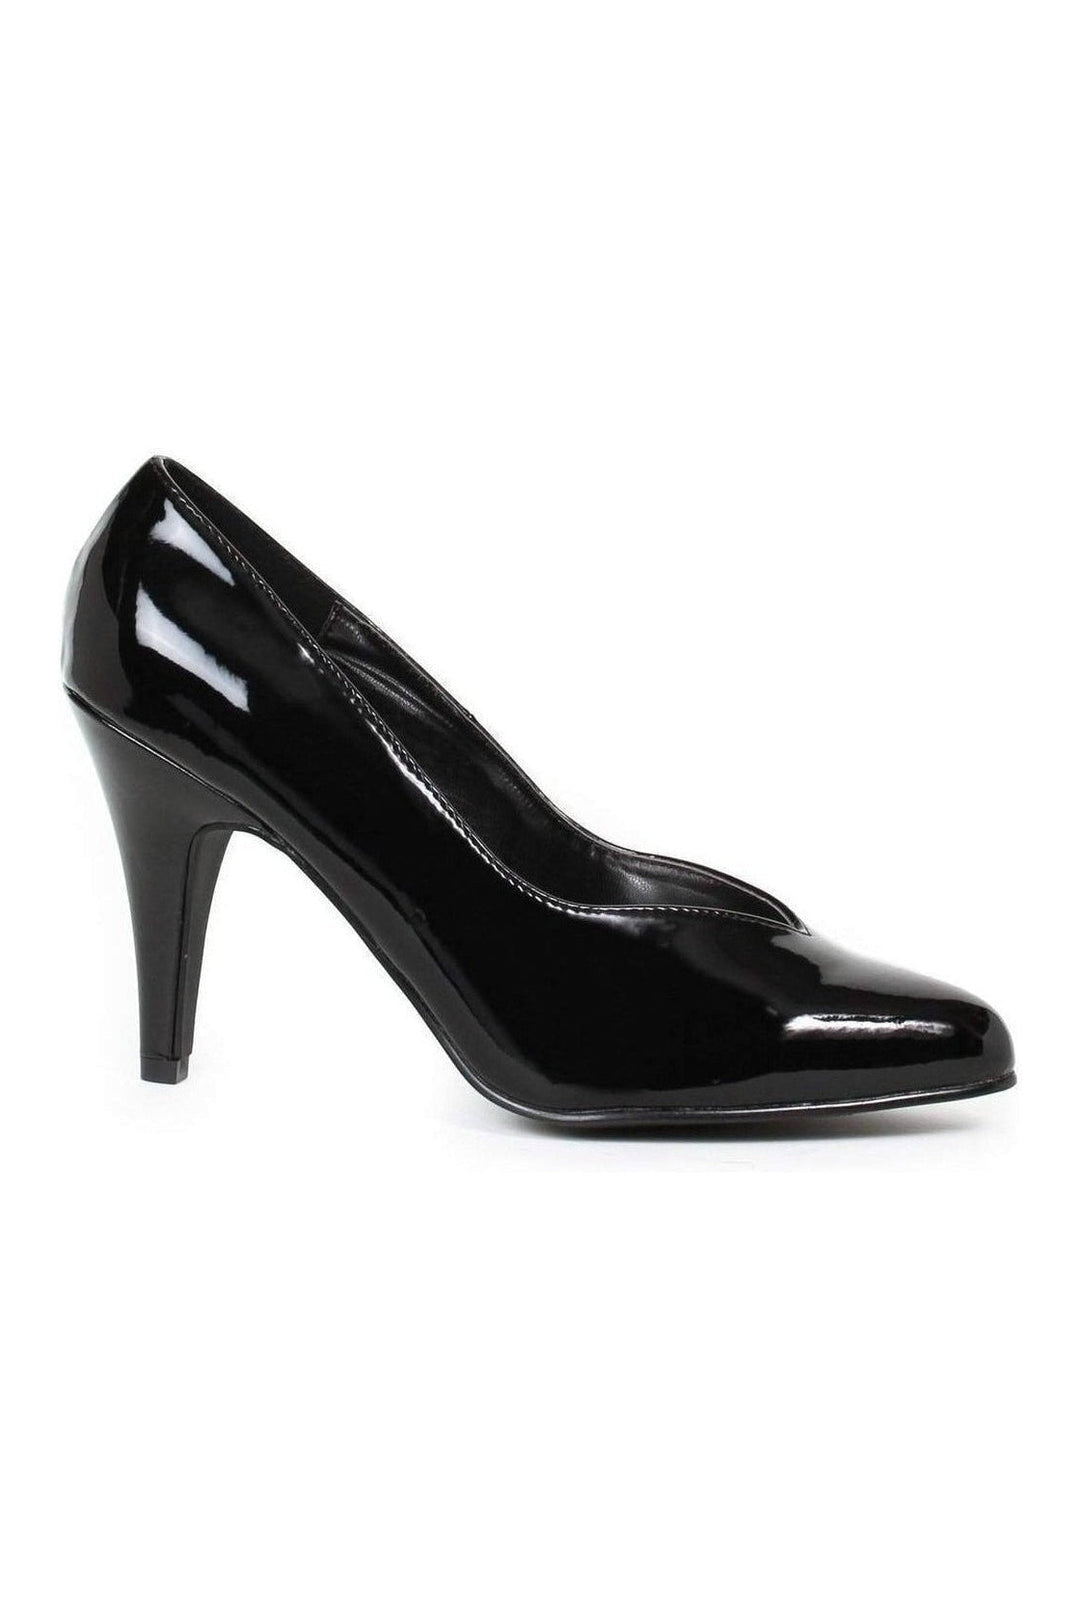 8240-D Pump | Black Patent-Ellie Shoes-SEXYSHOES.COM